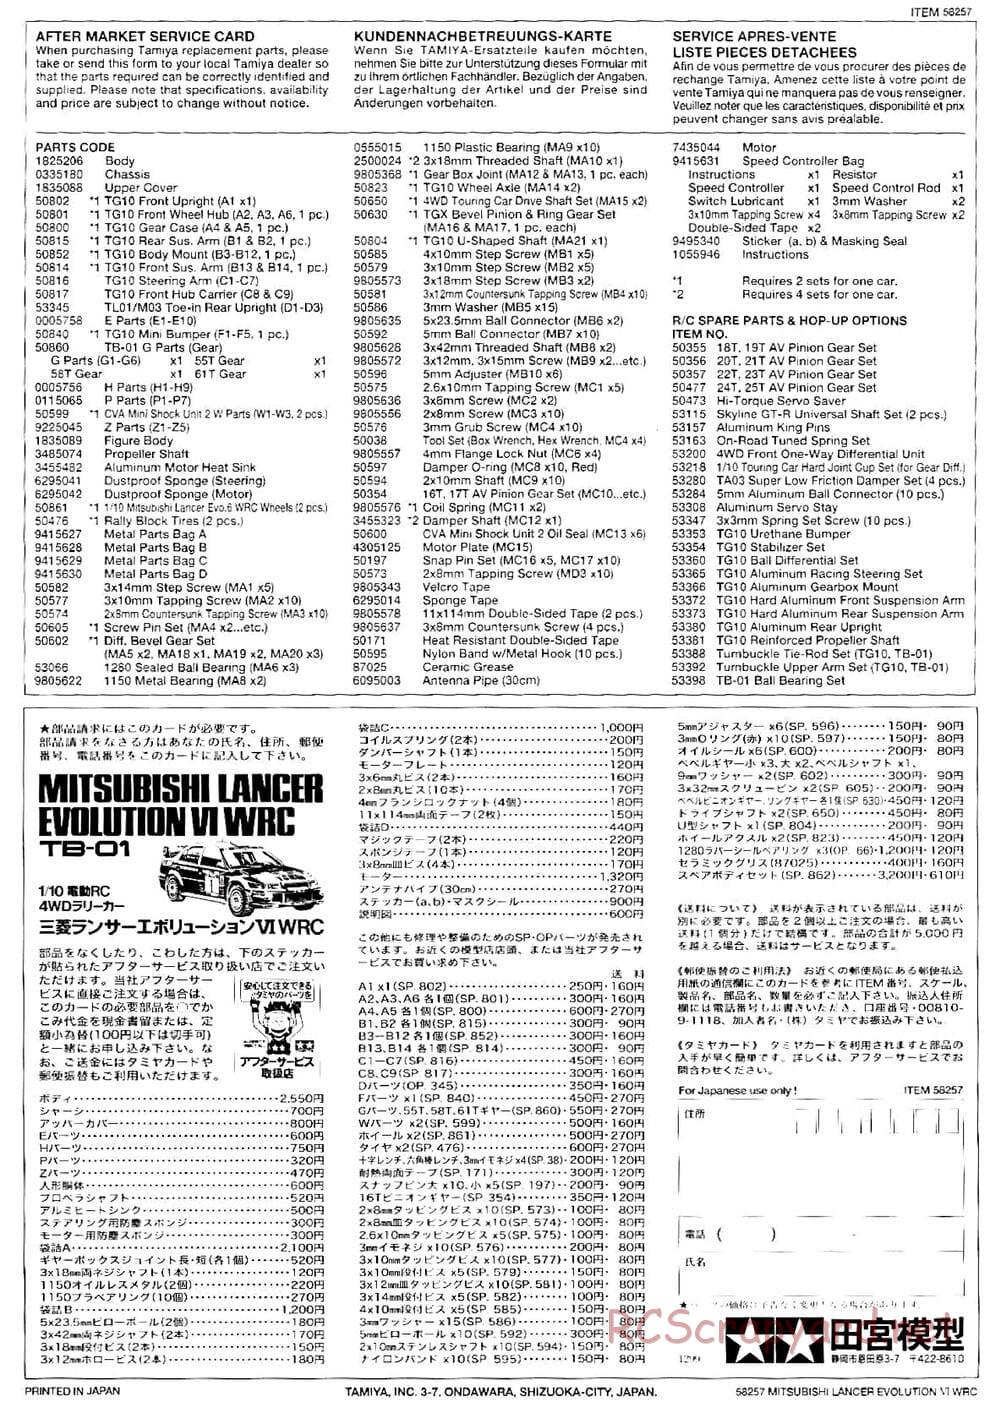 Tamiya - Mitsubishi Lancer Evolution VI WRC - TB-01 Chassis - Manual - Page 25